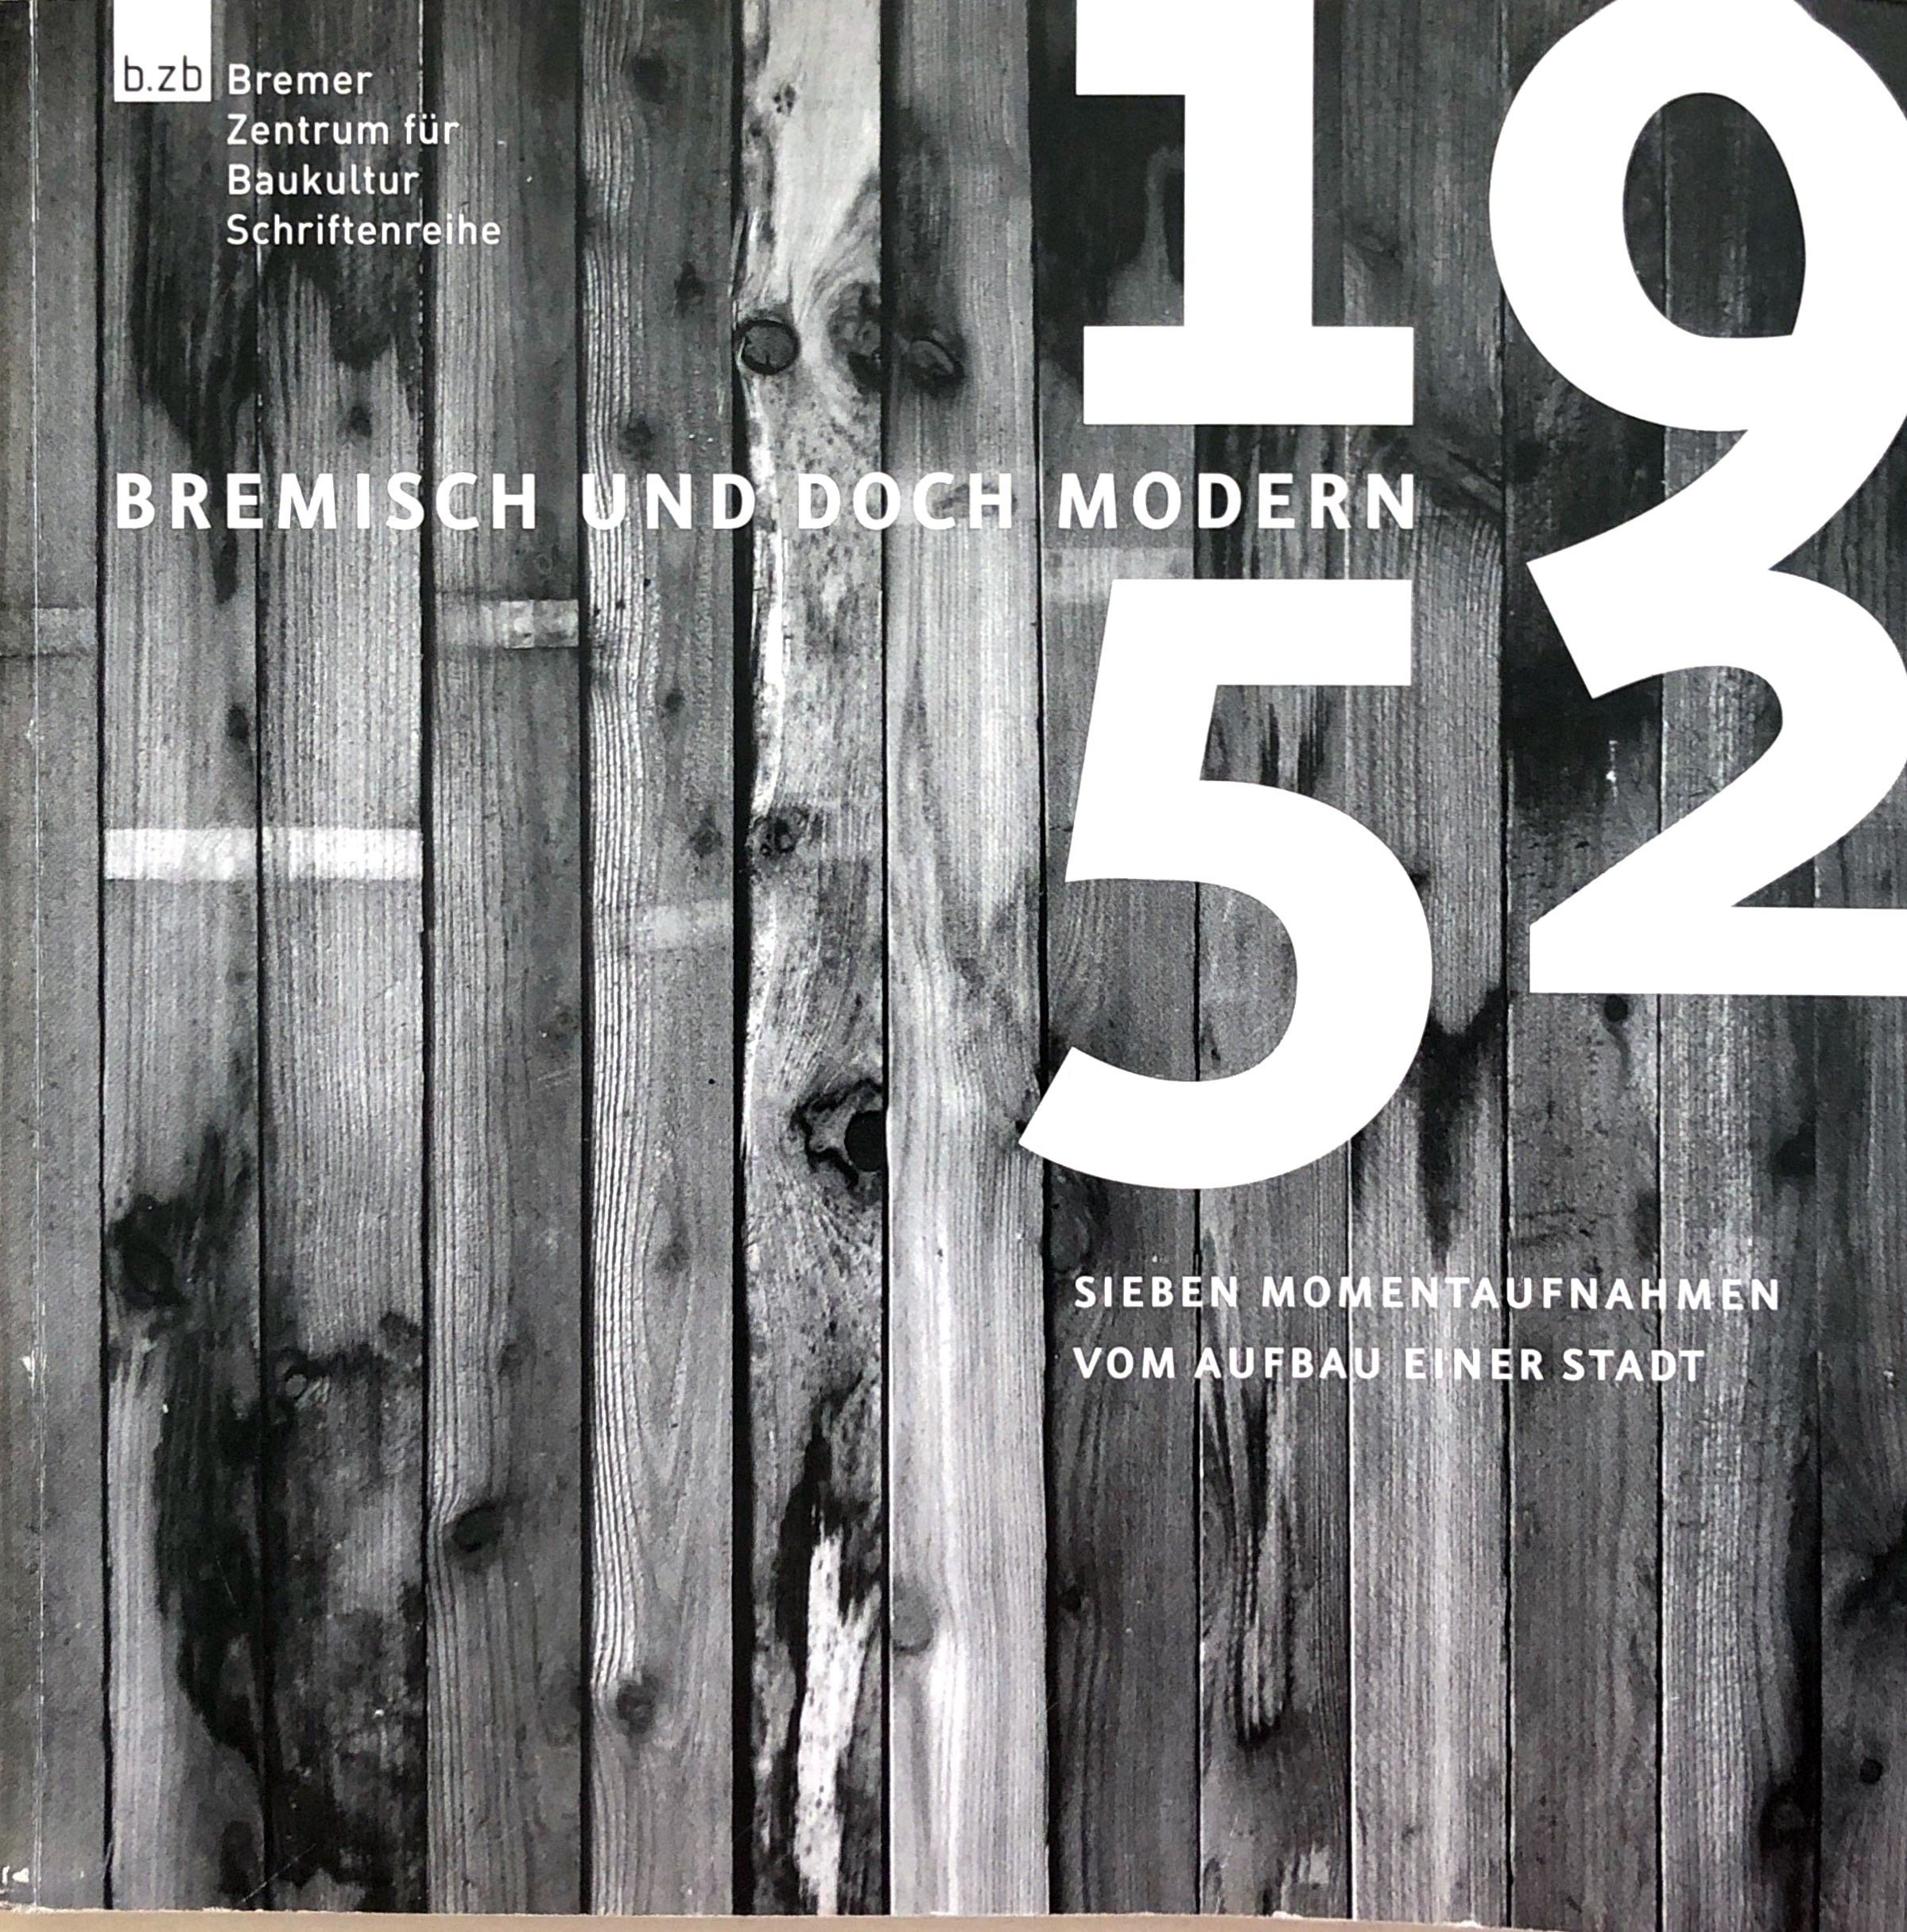 Bremisch und doch modern 1952 - Sieben Momentaufnahmen vom Aufbau der Stadt - (= Bremer zentrum für Baukultur, Schriftenreihe Band 7) - Syring, Eberhard